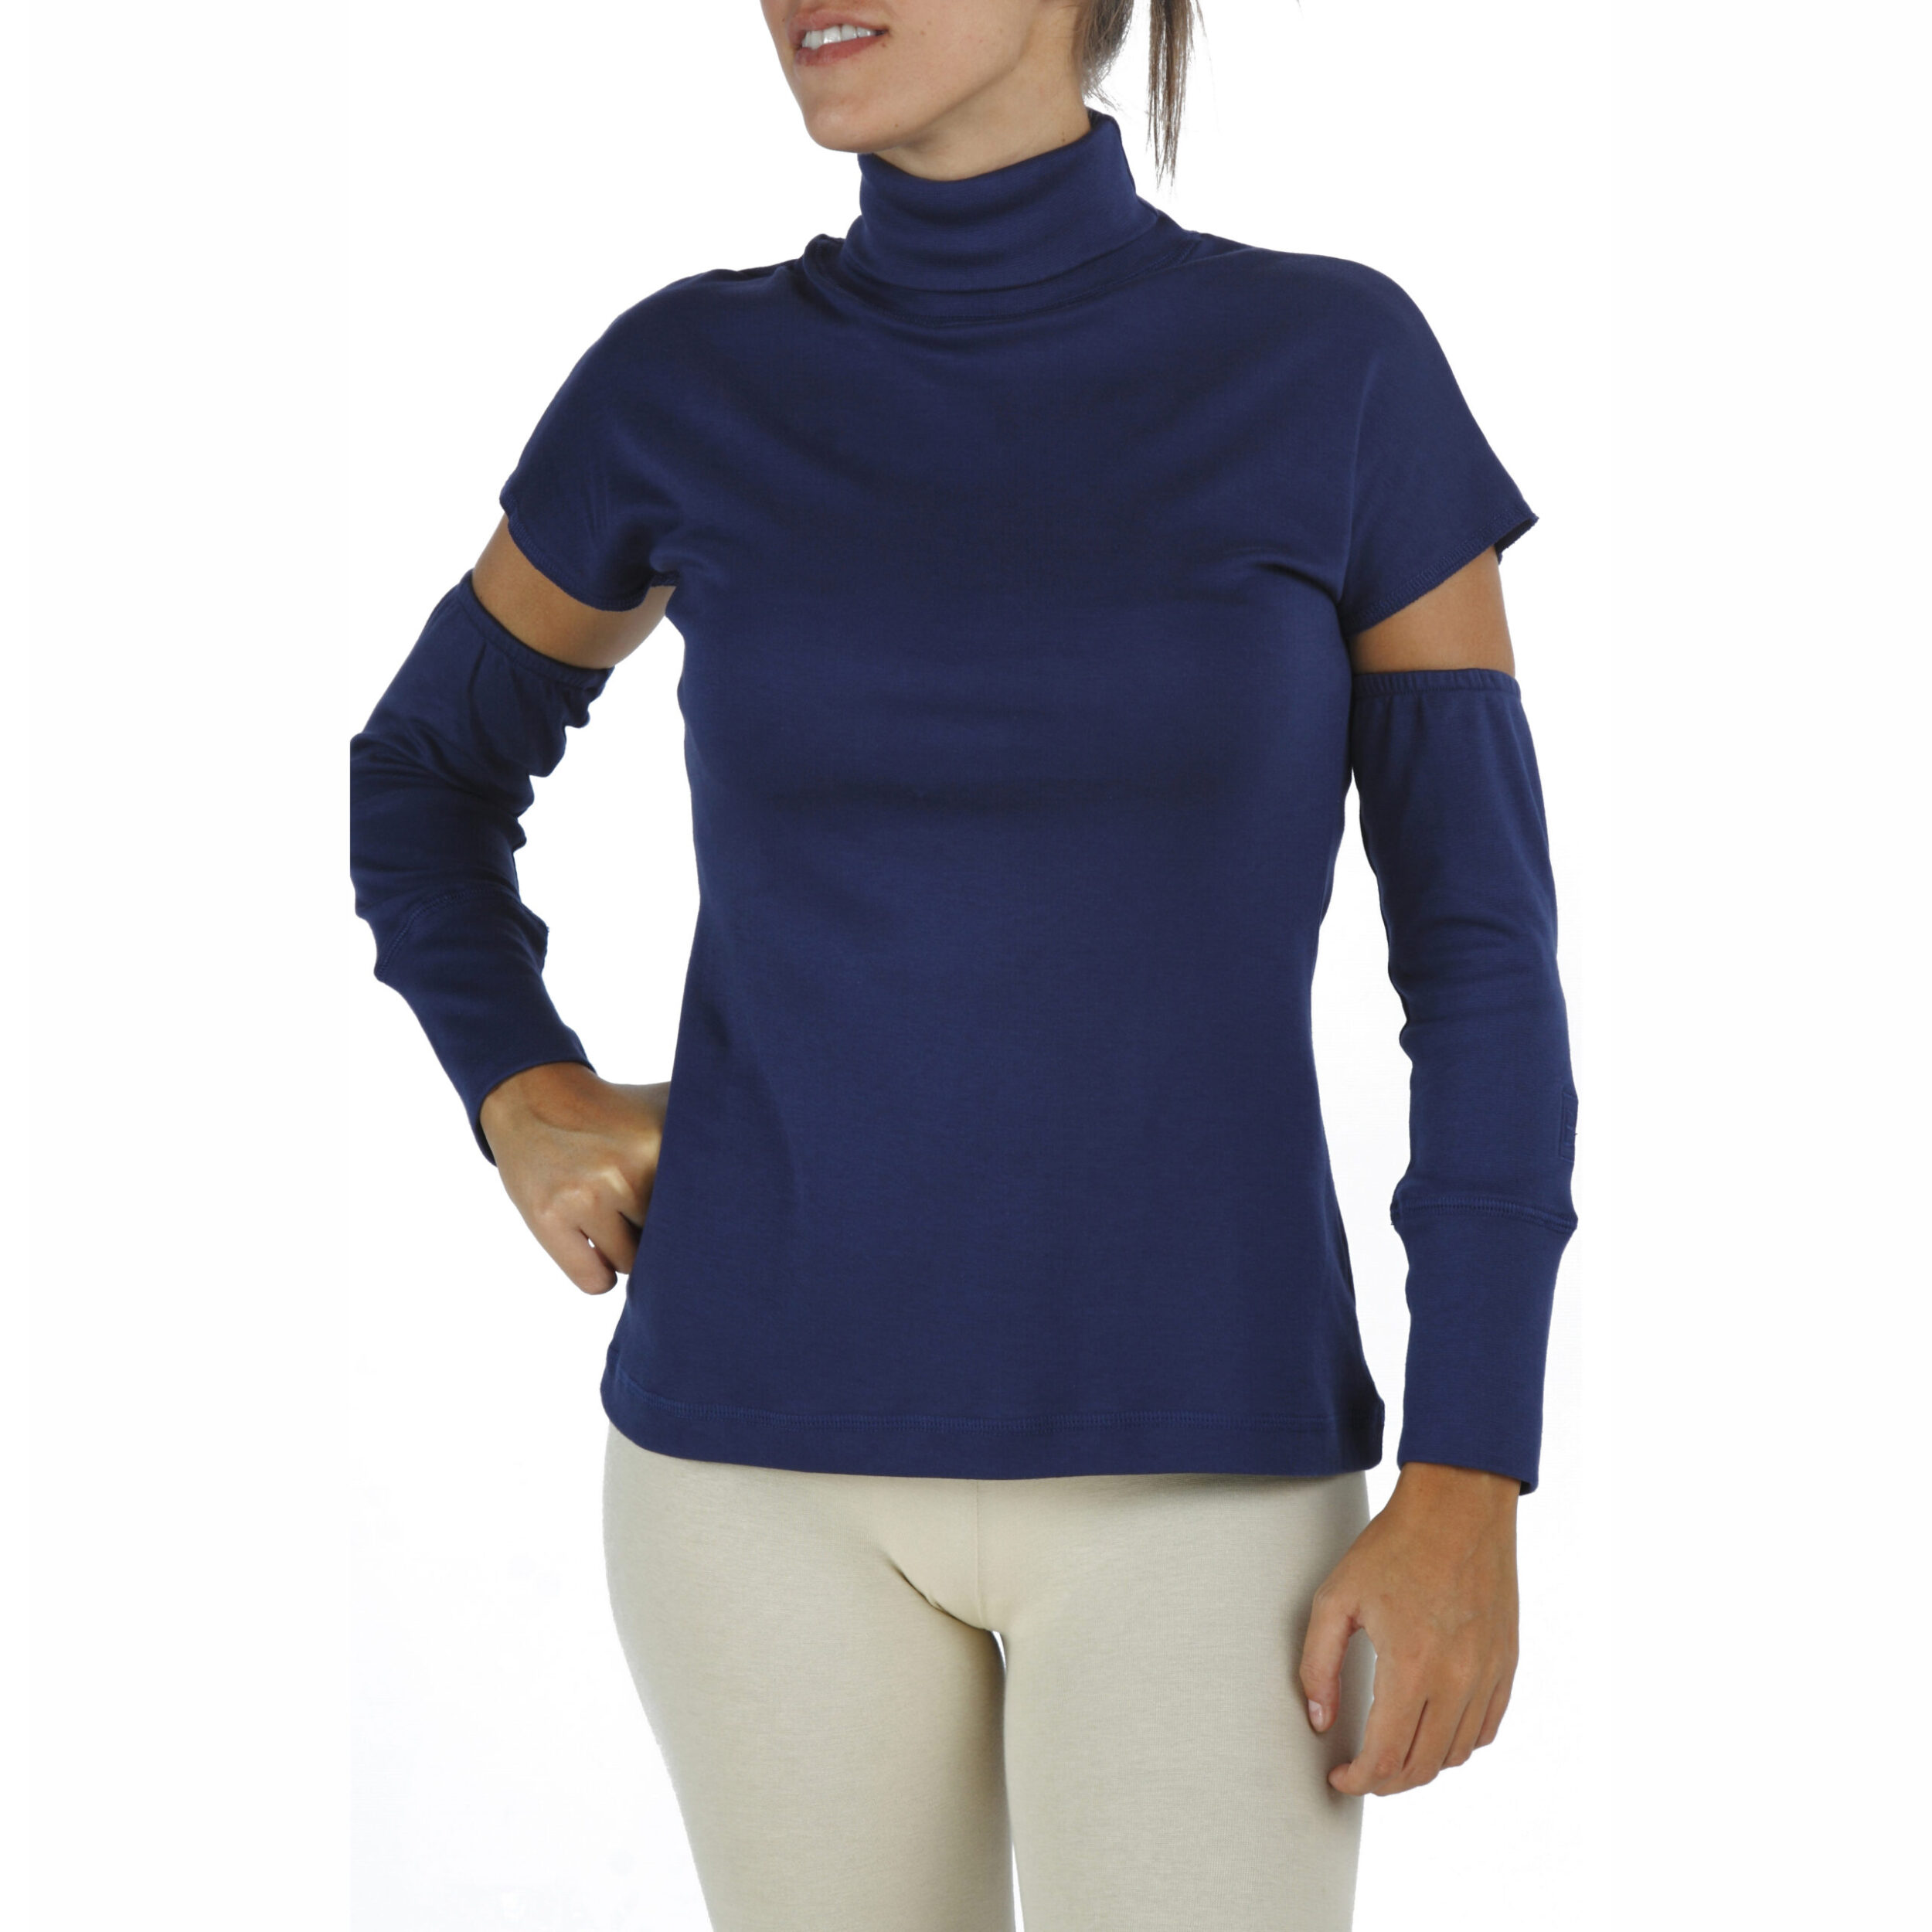 detached sleeves sleeveles turtleneck organic pima cotton slowfashion quality blue